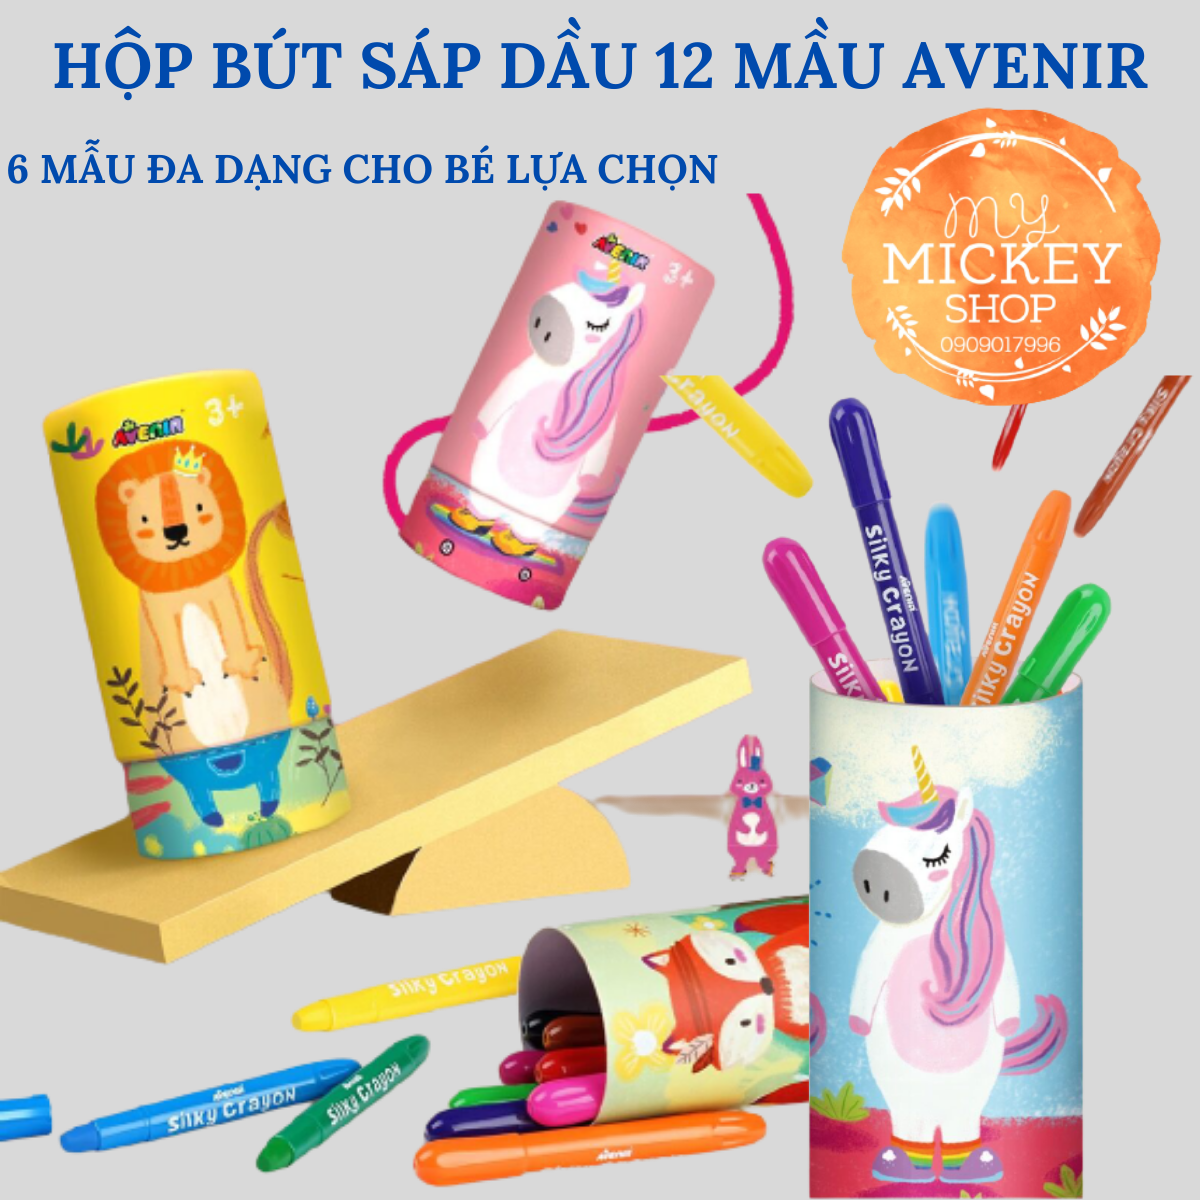 Hộp bút sáp dầu 12 màu Avenir có 6 mẫu cho bé lựa chọn - Avenir Silky Crayon My Mickey Shop